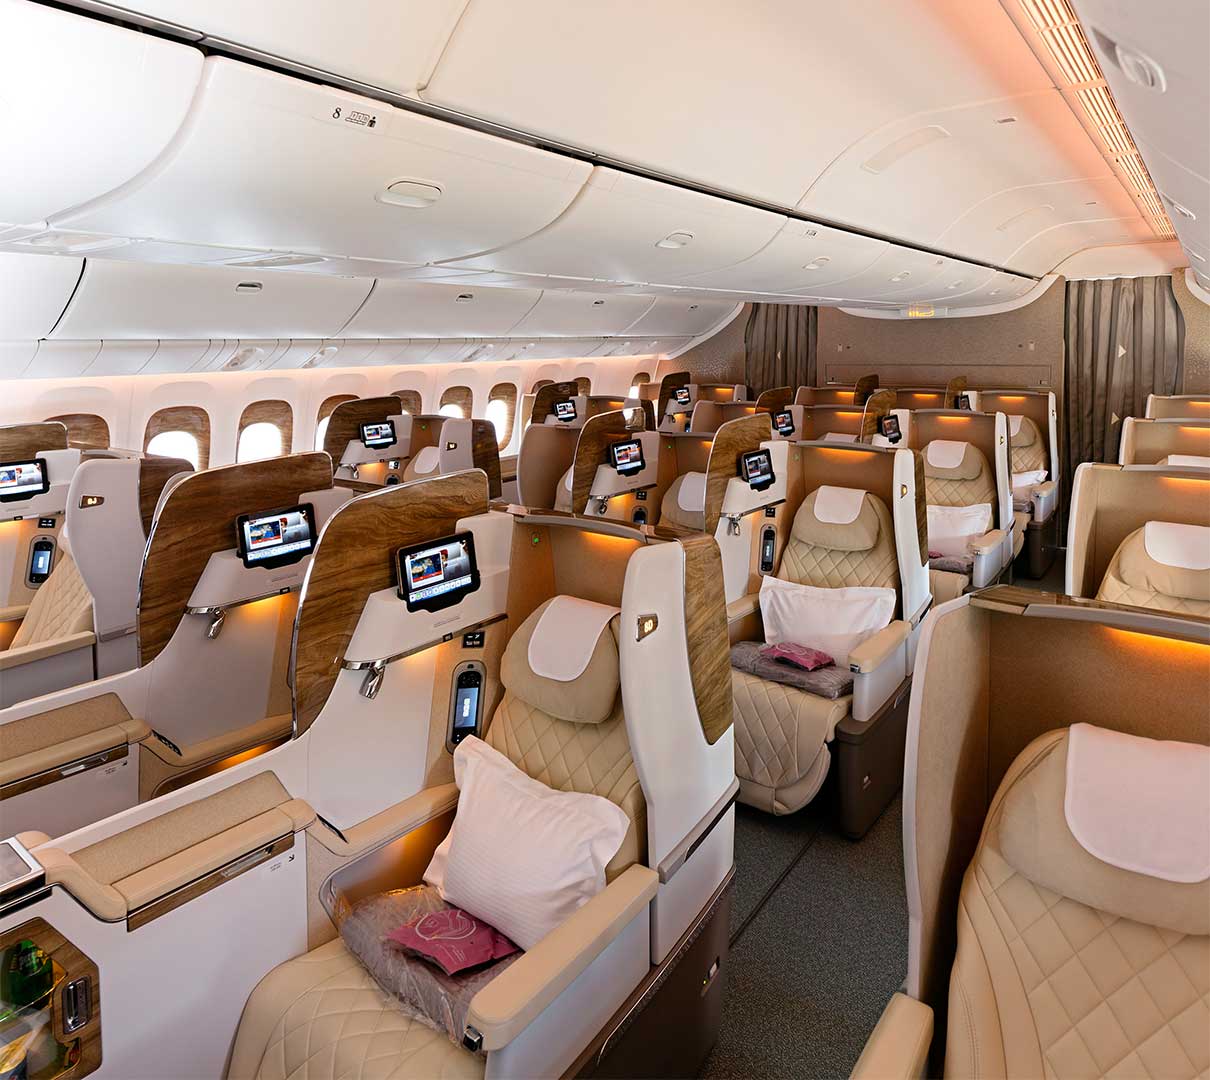 فرست کلاس پروازهای امارات در نمایشگاه هوایی امسال در شهر دبی از پروژه‌ی خود با همکاری مرسدس بنز در ساخت کابین‌های اختصاصی برای مسافران ویژه رونمایی کرد.